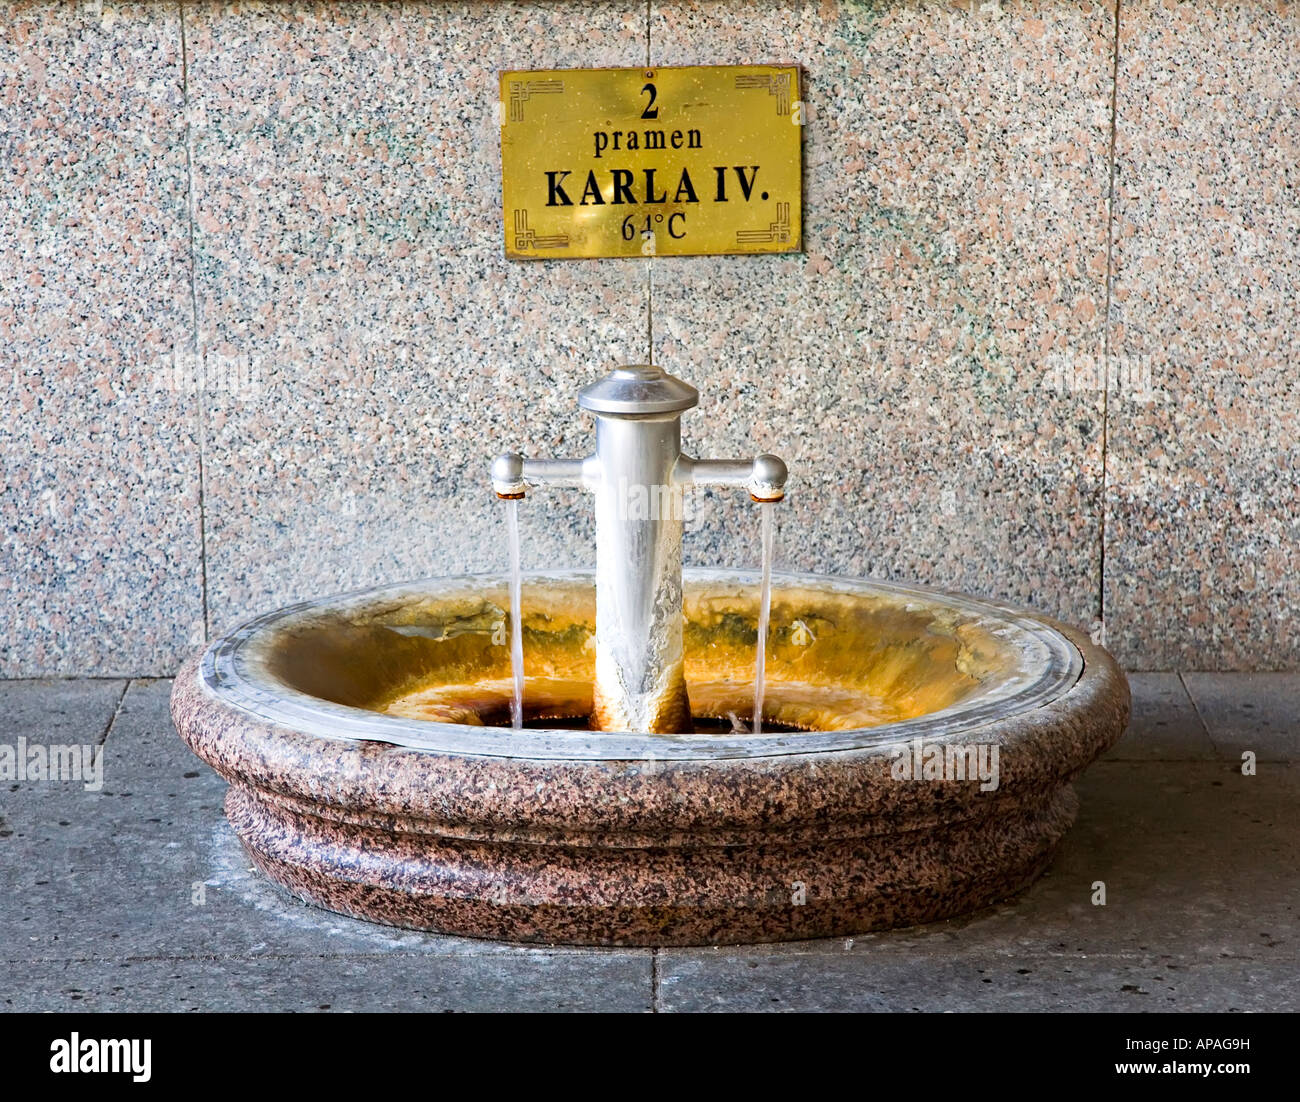 Hot spring 2 Karla IV pramen with 64 degree water Mlynska Kolonada Karlovy Vary Czech Republic Stock Photo